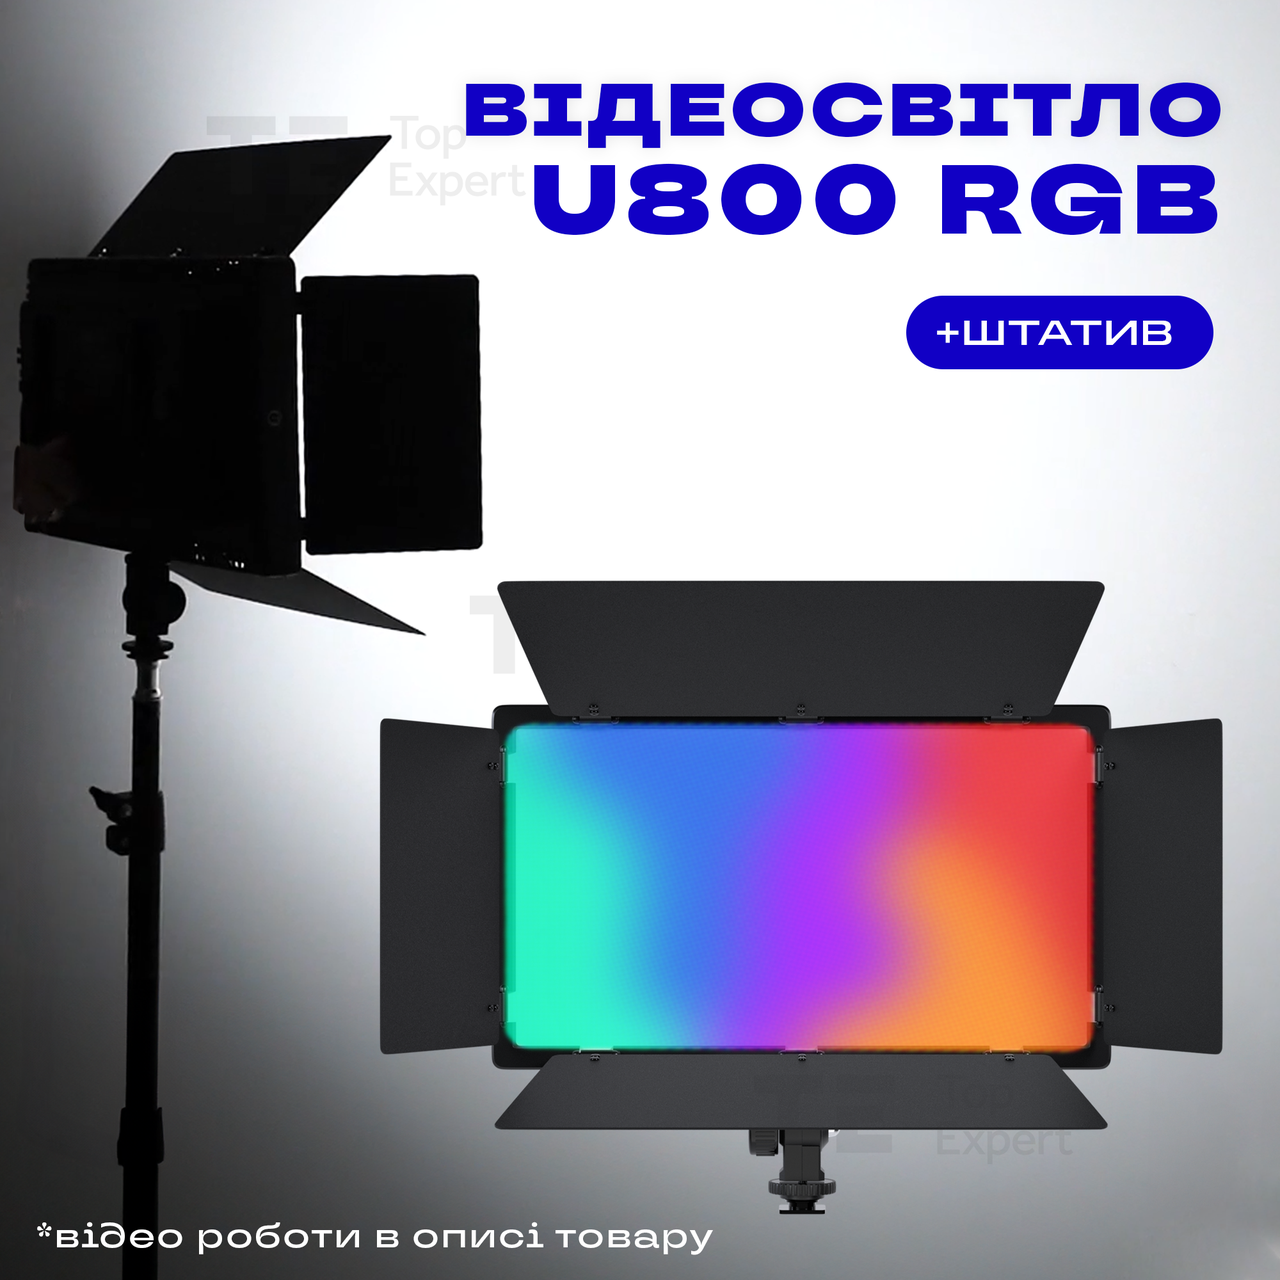 Прямокутна LED лампа U800 RGB відеосвітло для фото, відео 29х17 см зі штативом 2,1 метр. Студійне світло.